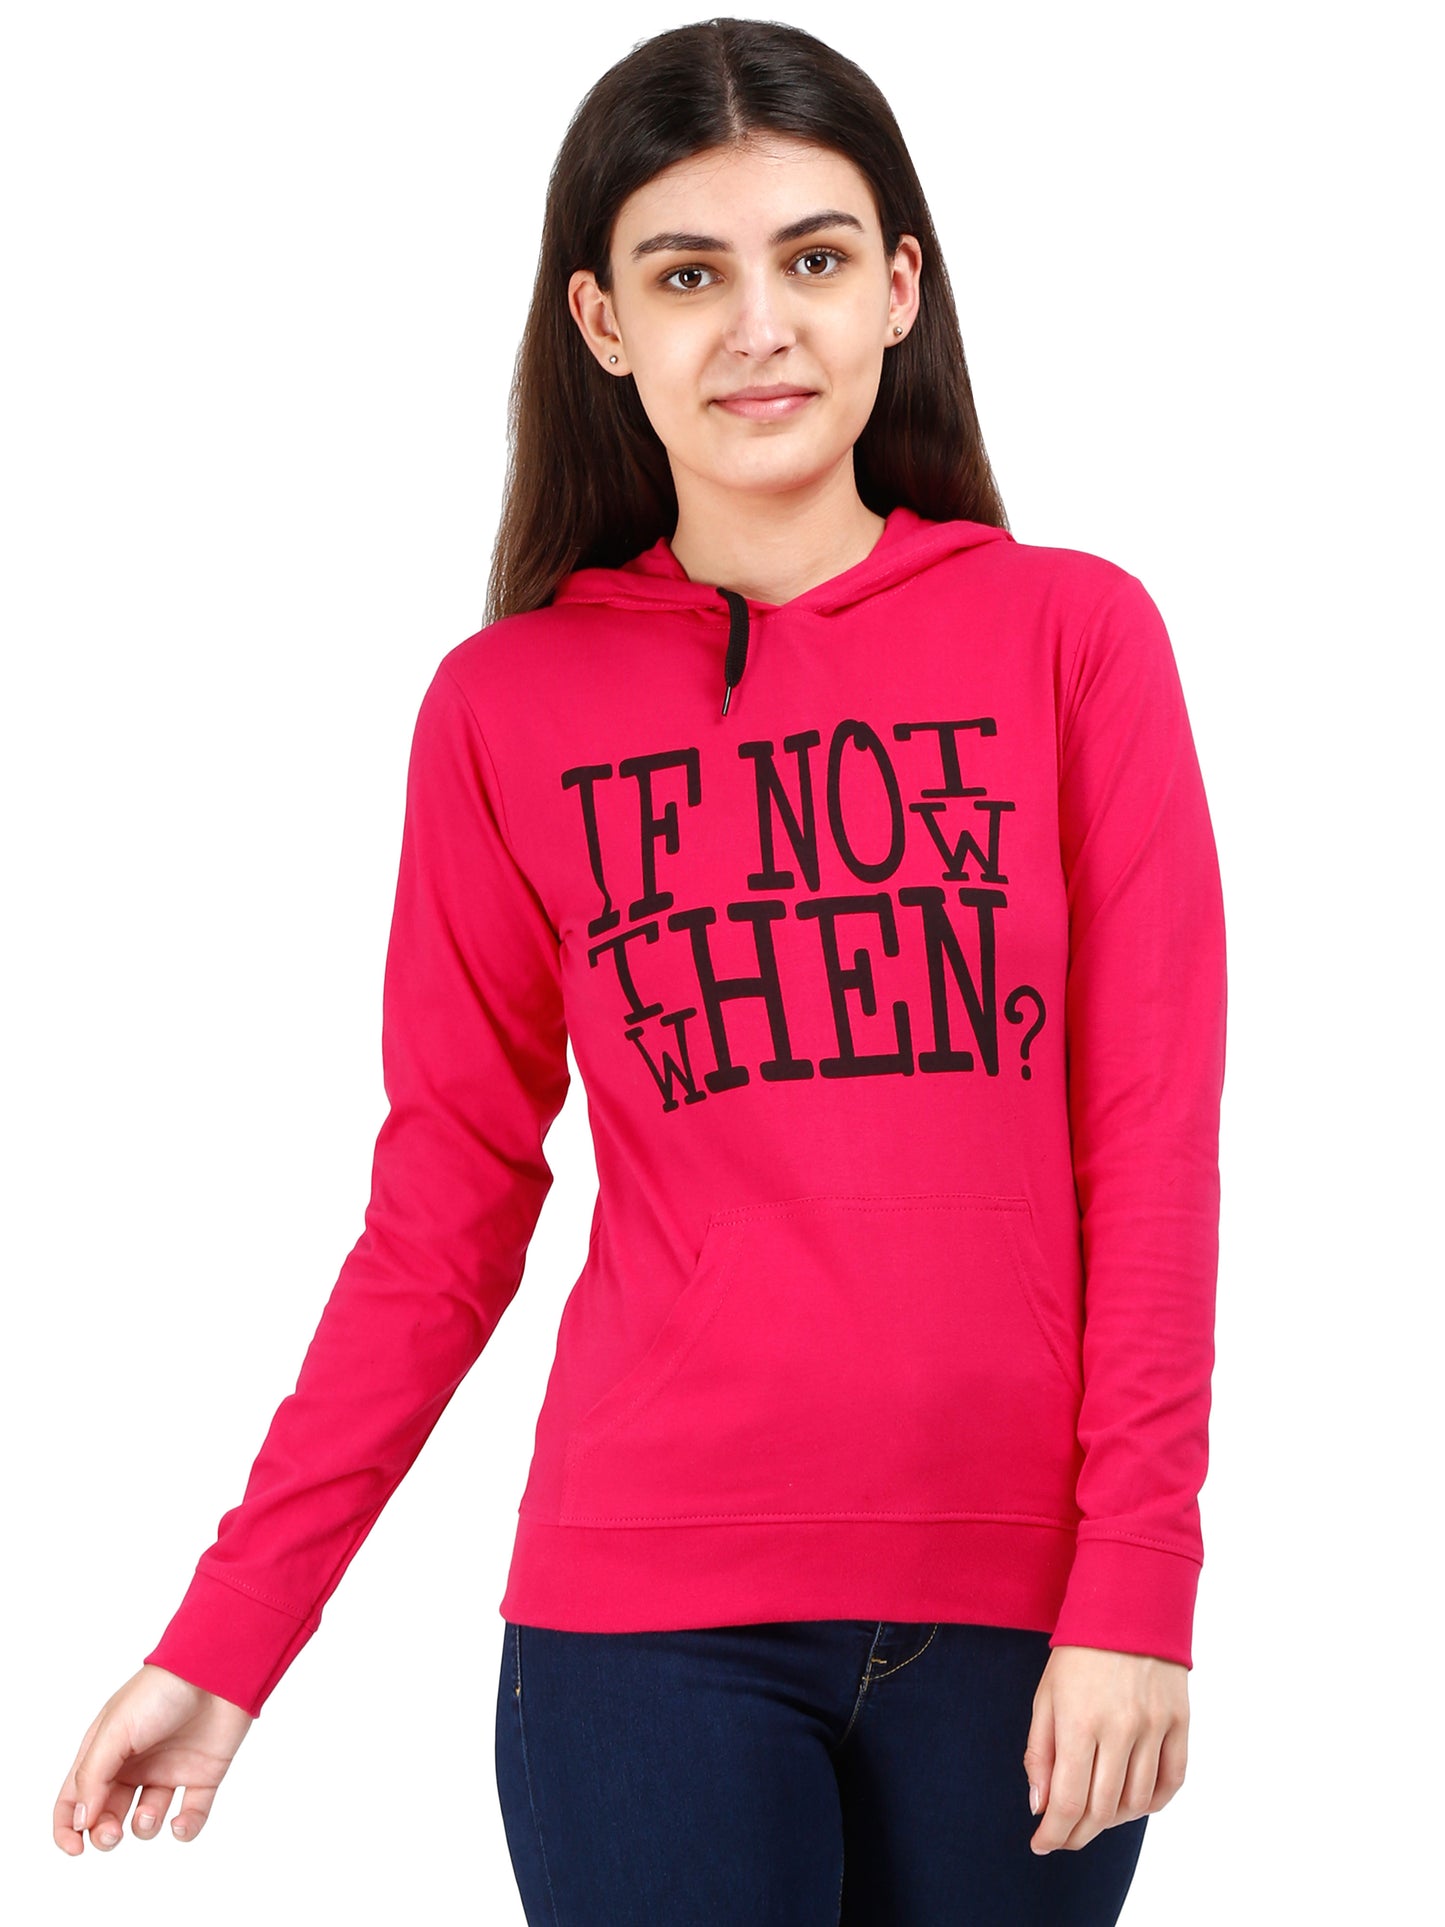 Women's Cotton Printed Full Sleeve Pink Color Sweatshirt/Hoodies